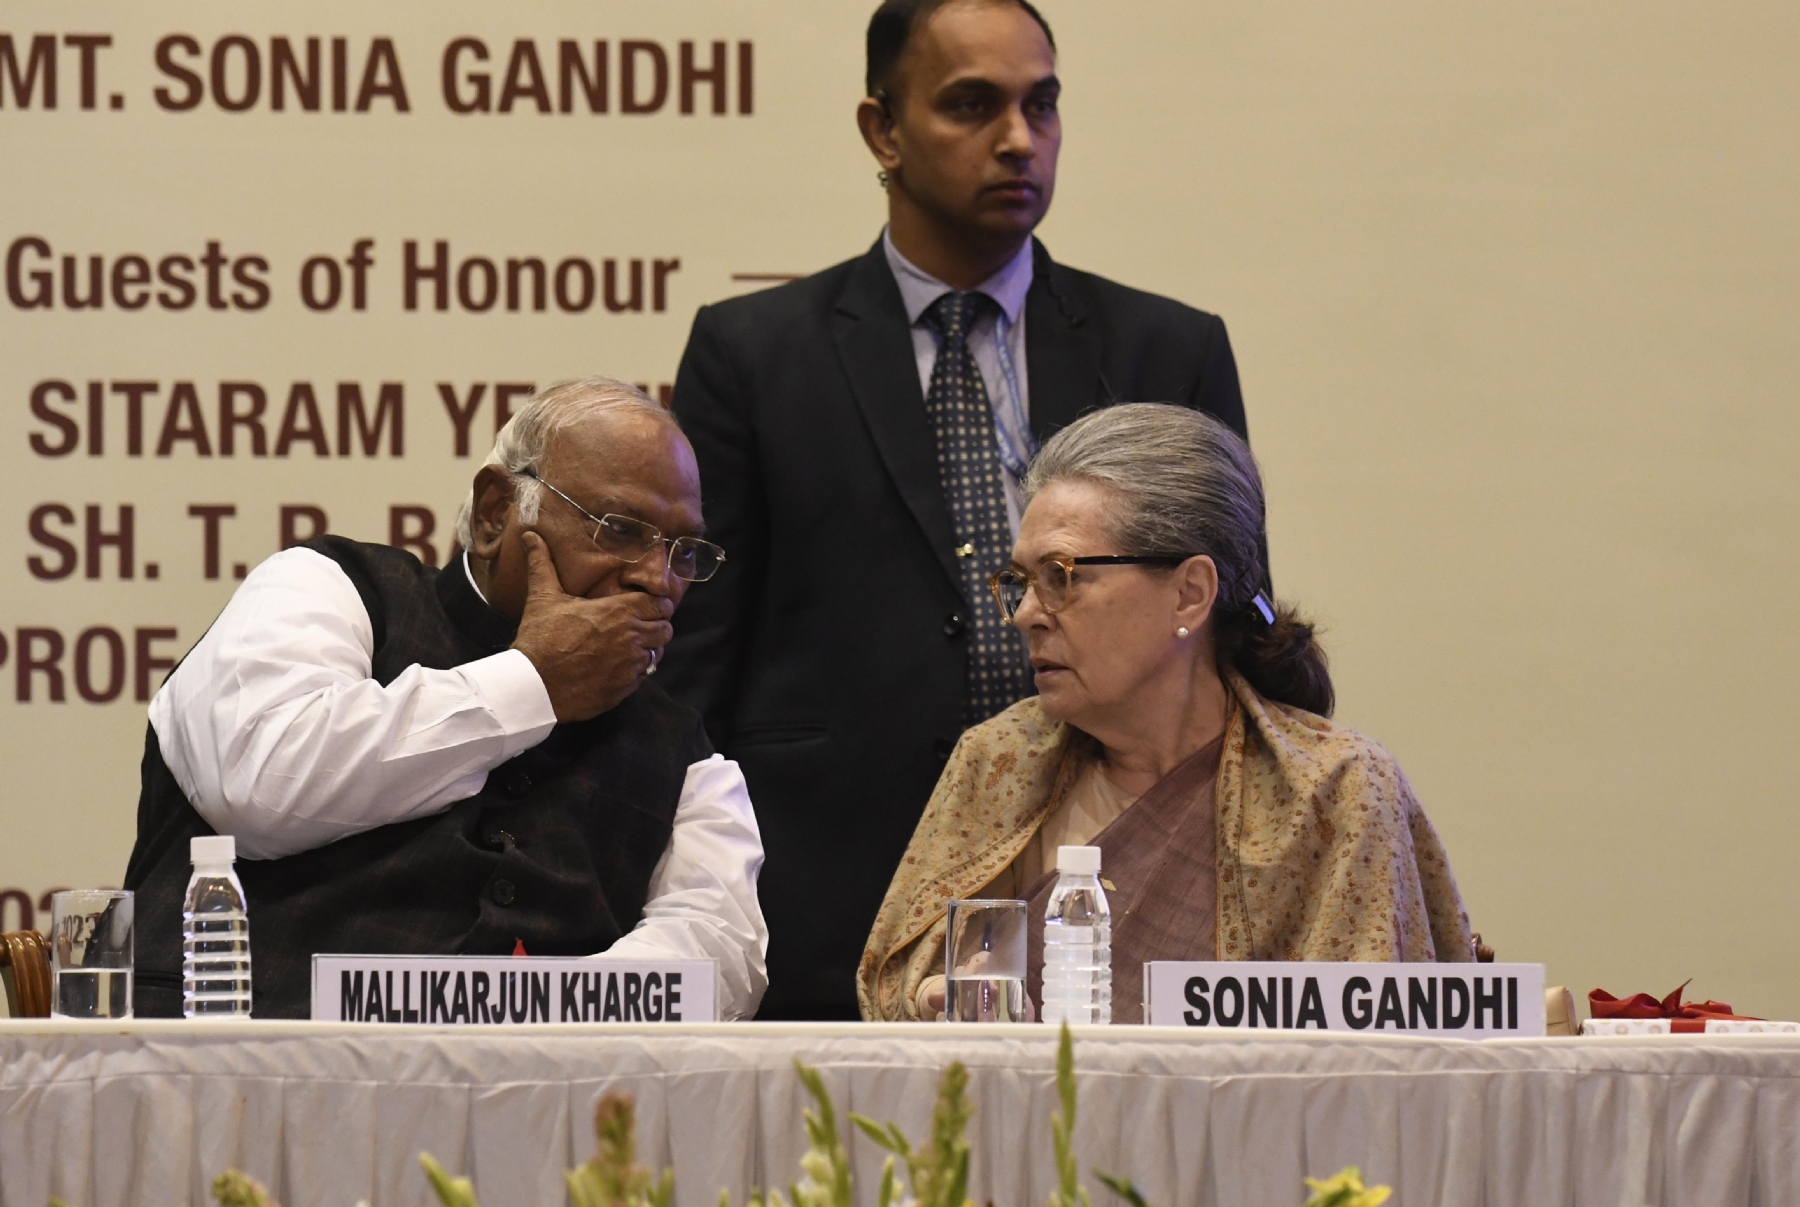 कांग्रेस अध्यक्ष मल्लिकार्जुन खड़गे, कांग्रेस संसदीय दल की अध्यक्ष सोनिया गांधी और सीपीआई (एम) महासचिव सीताराम येचुरी के साथ बुधवार को नई दिल्ली में 'मल्लिकार्जुन खड़गे की जीवनी पर पुस्तक का विमोचन।